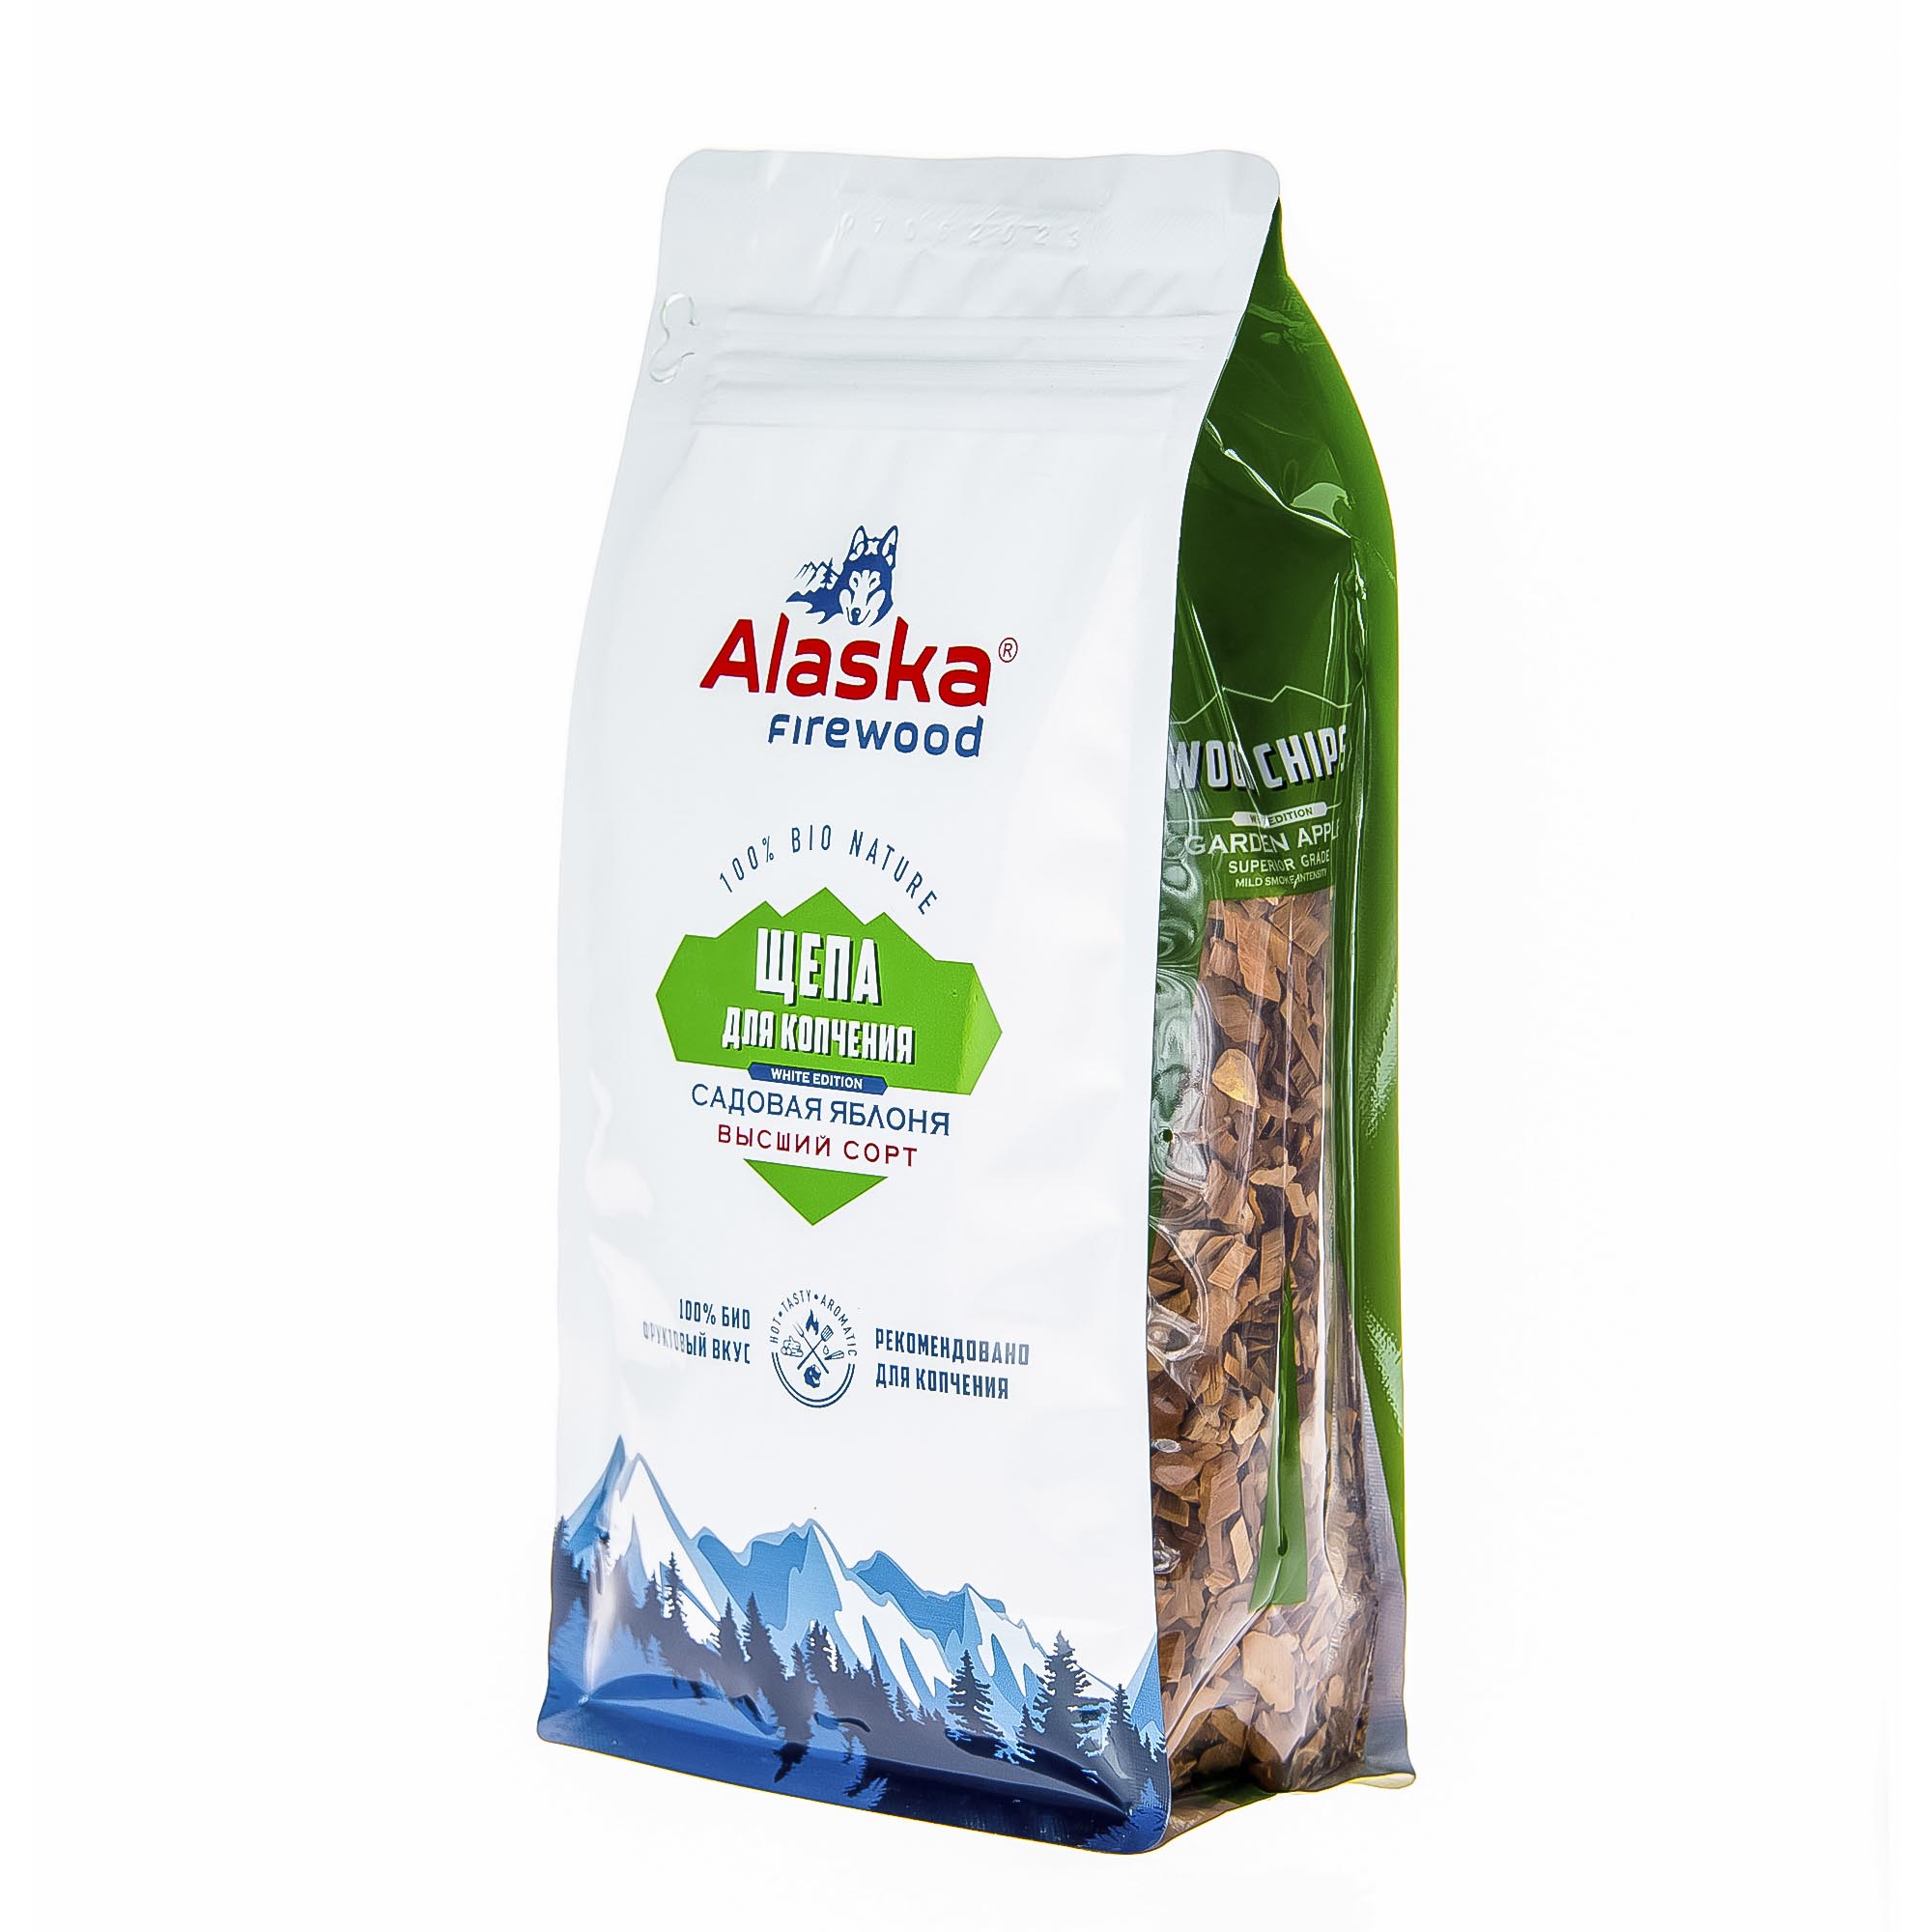 Щепа для копчения Alaska firewood яблоко 300 г дрова березовые alaska firewood 10кг pro